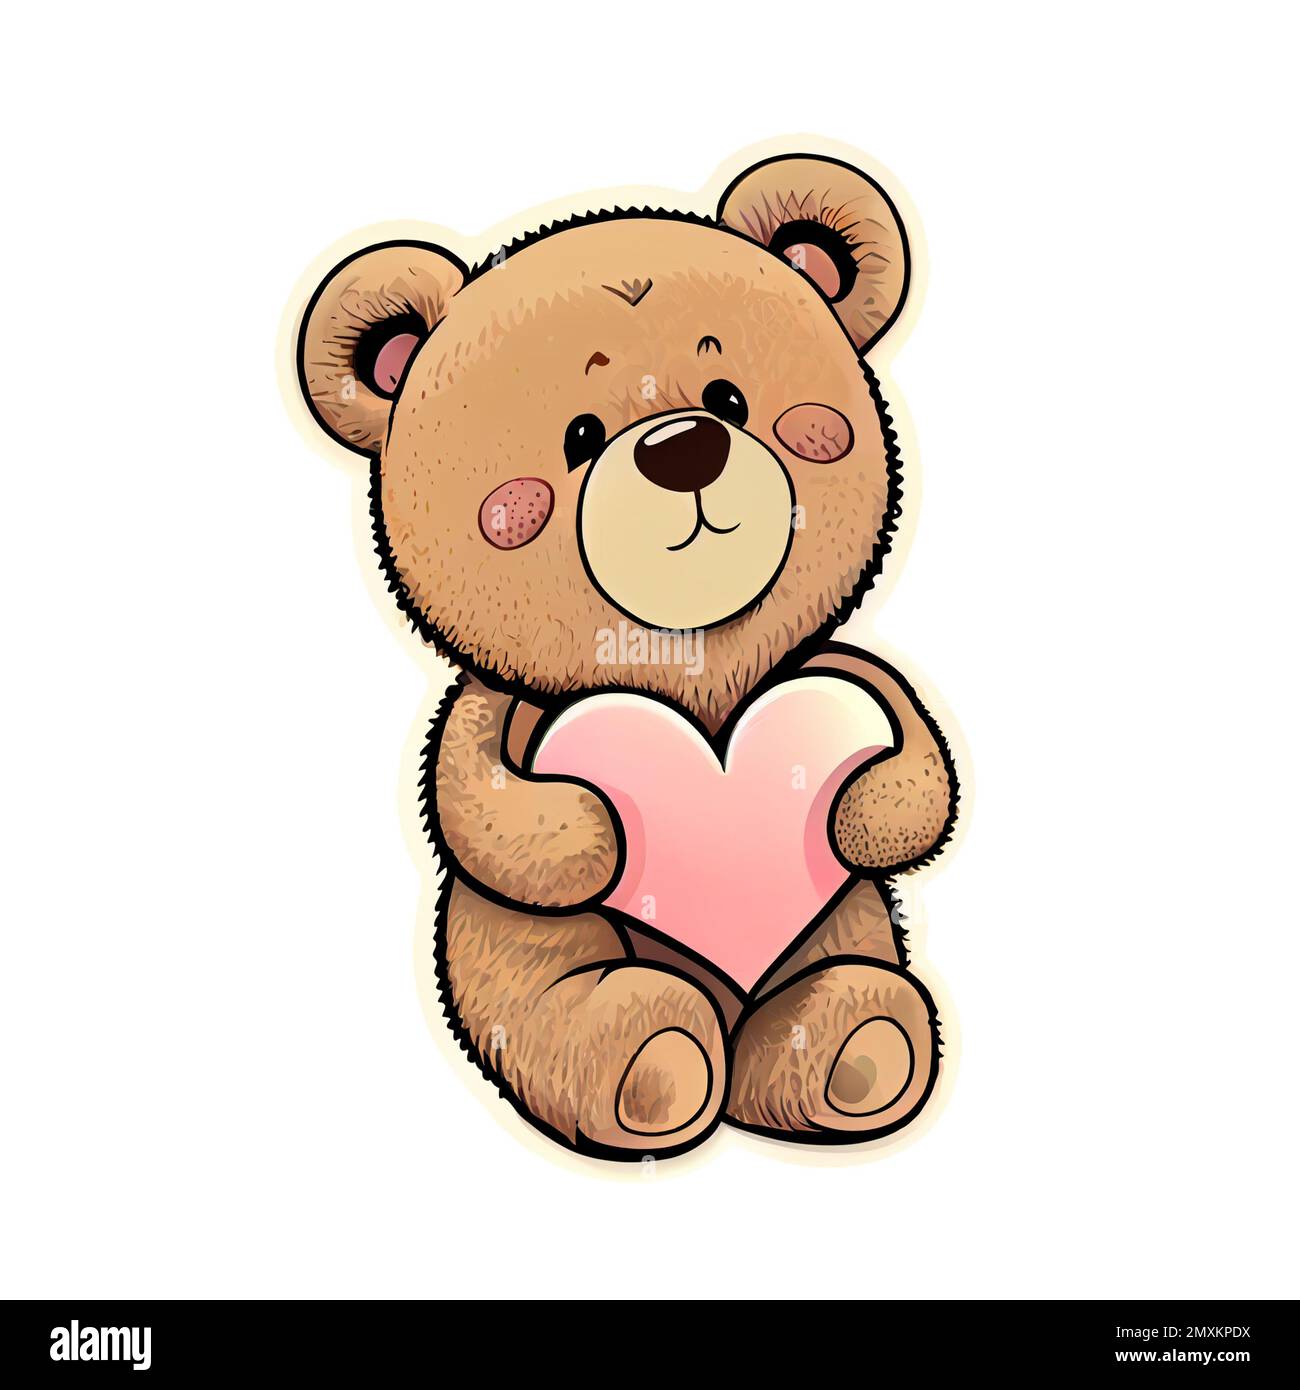 Süßer Teddybär, der einen Cartoon mit Herz isoliert auf transparentem  Hintergrund hält. Valentinskarte, romantische Elemente. Handgezeichnete  Illustration Stockfotografie - Alamy